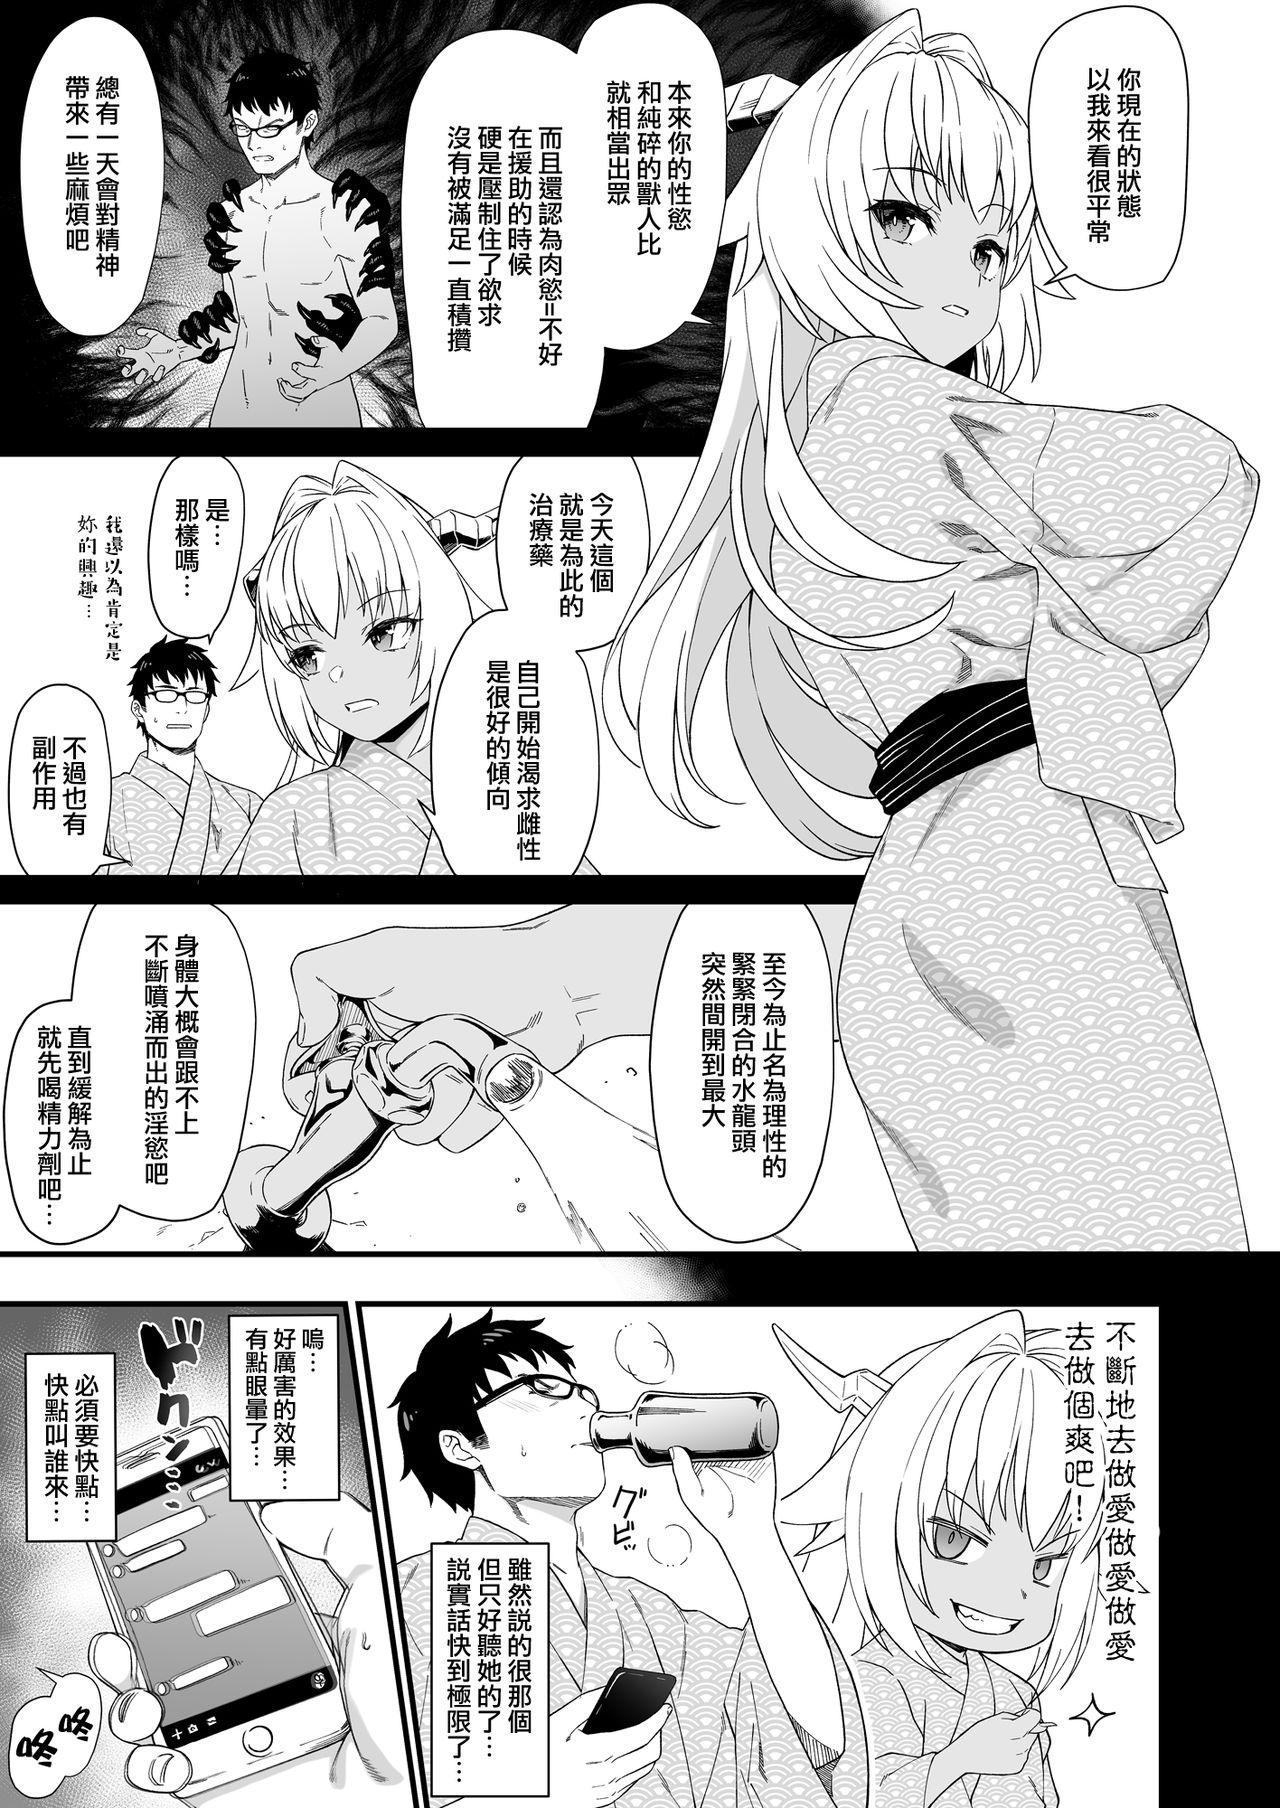 Stripping Enjo Kouhai 8 - Original Bigtits - Page 9